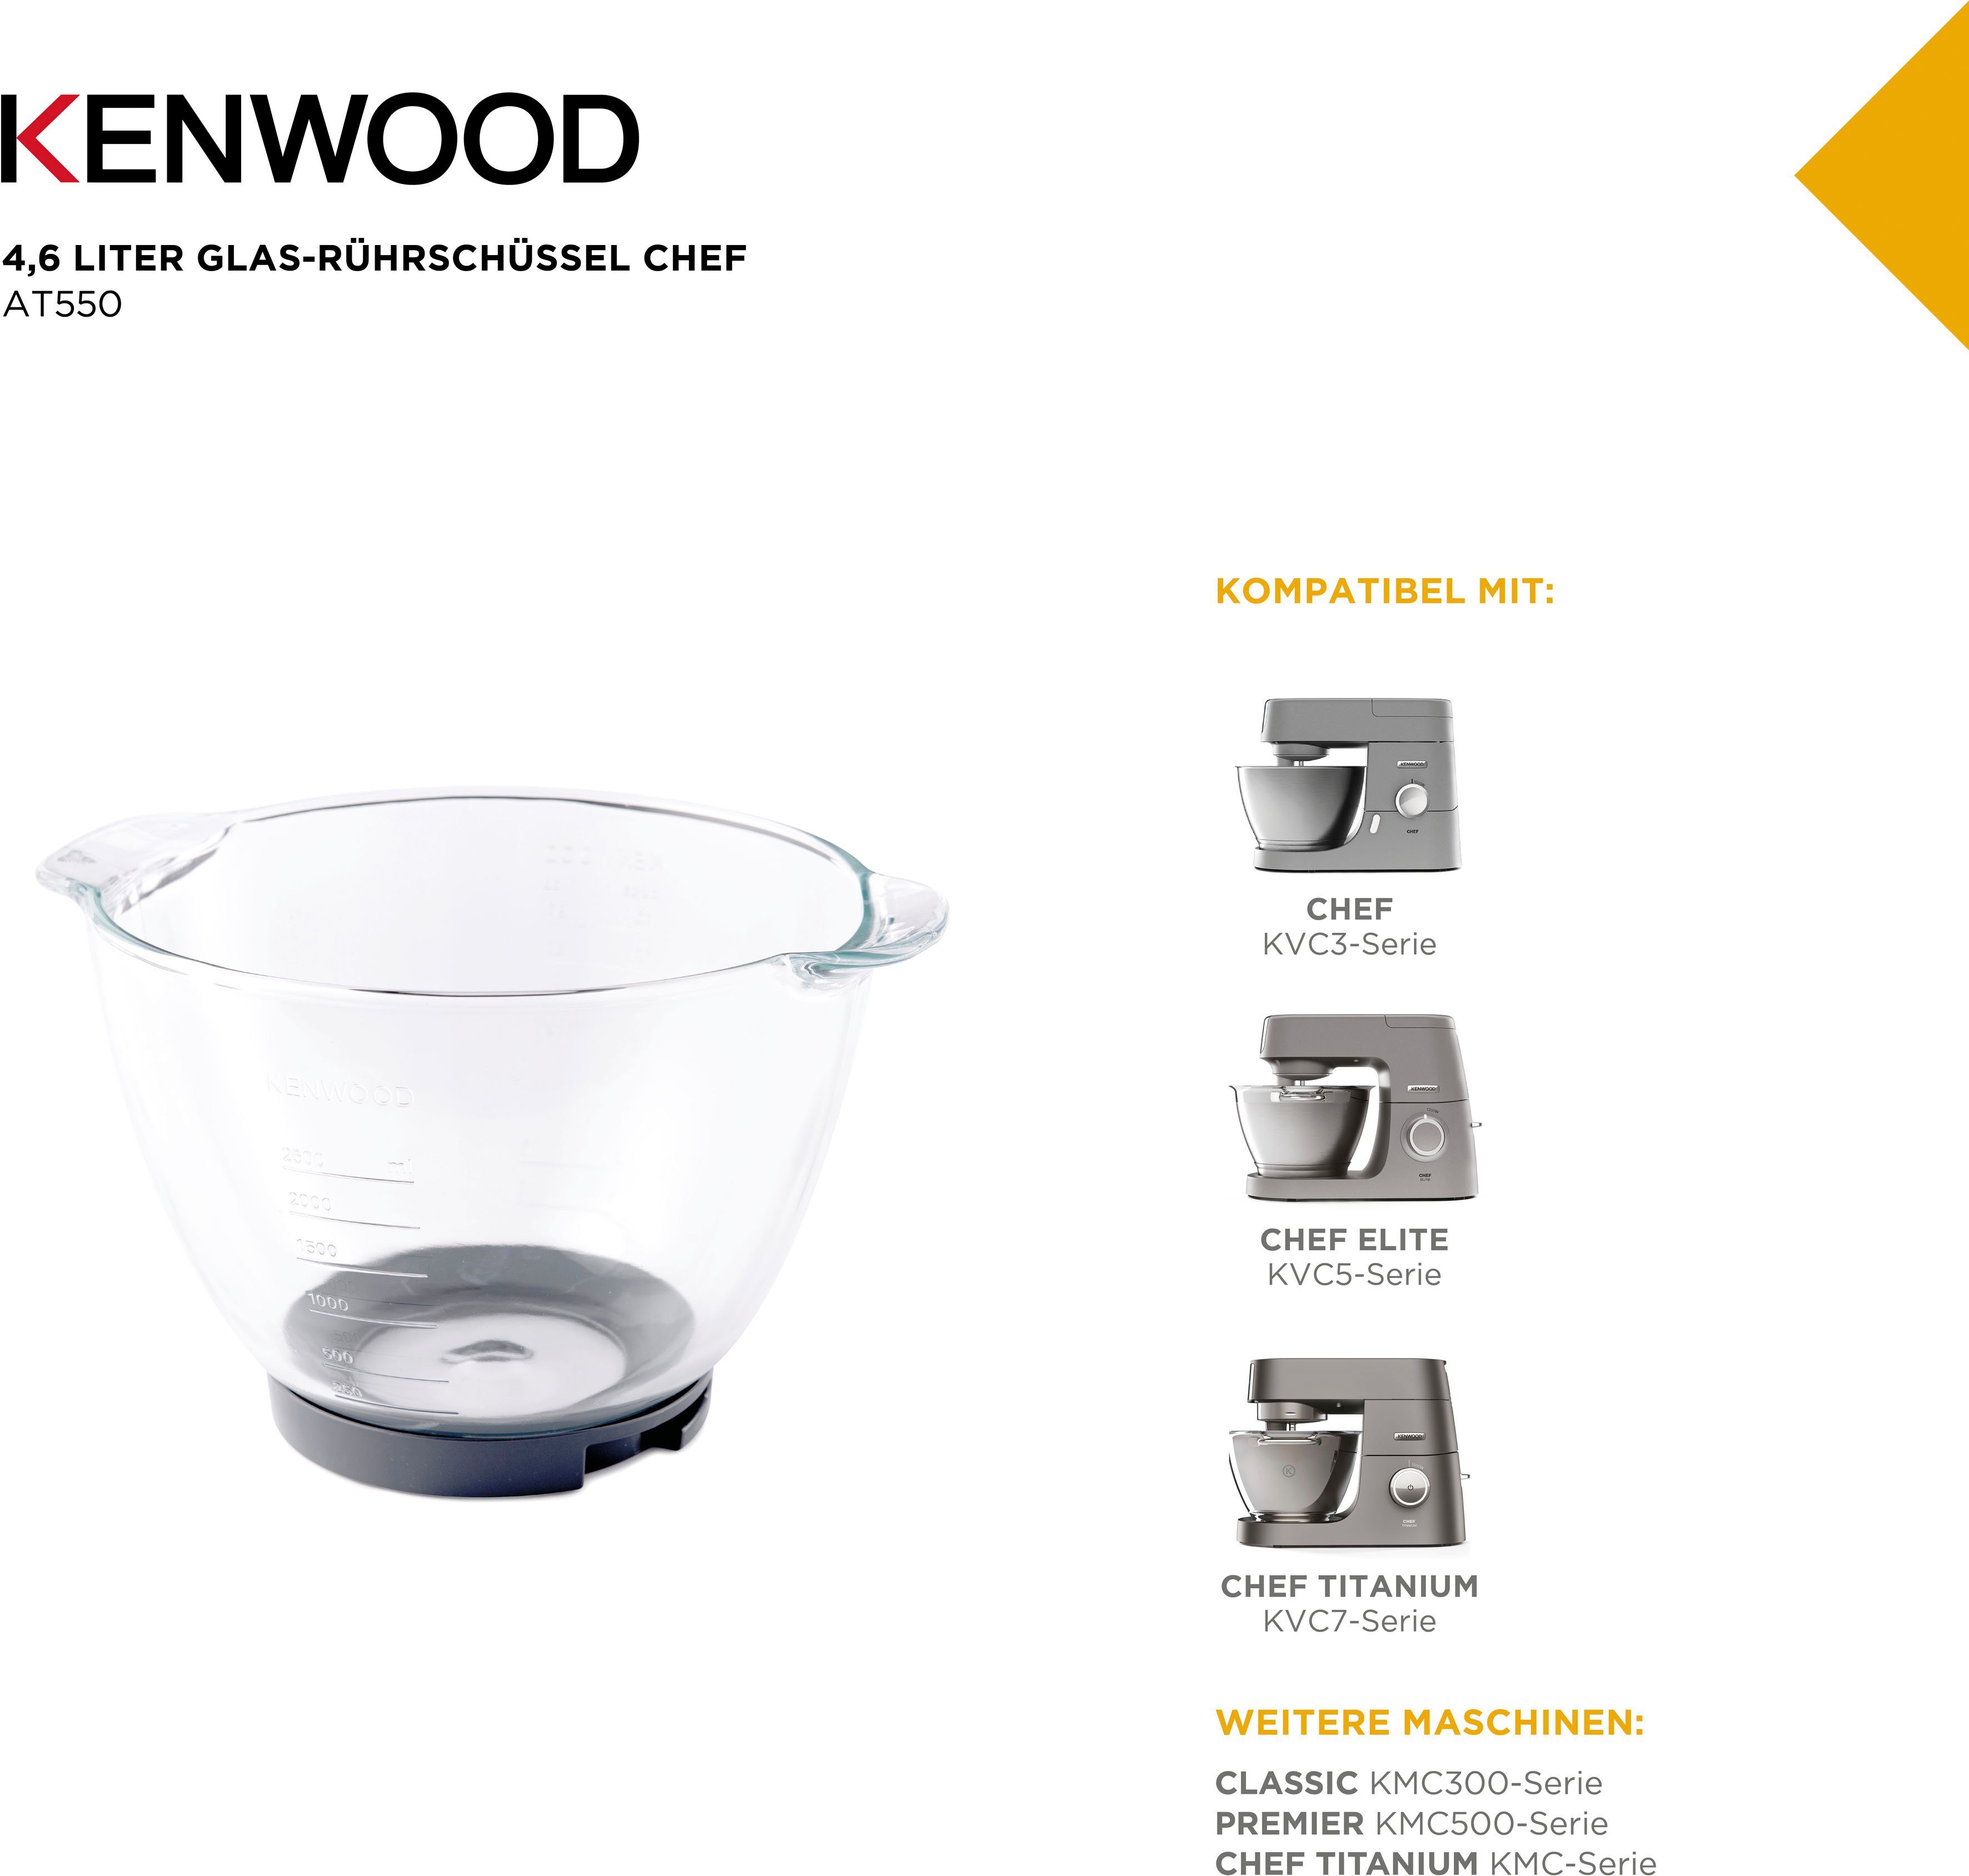 KENWOOD Titanium Chef KVC5-Serie, KVC7-Serie mit: Glas-Rührschüssel Elite Glas, AT550, Küchenmaschinenschüssel KVC3-Serie, Kompatibel